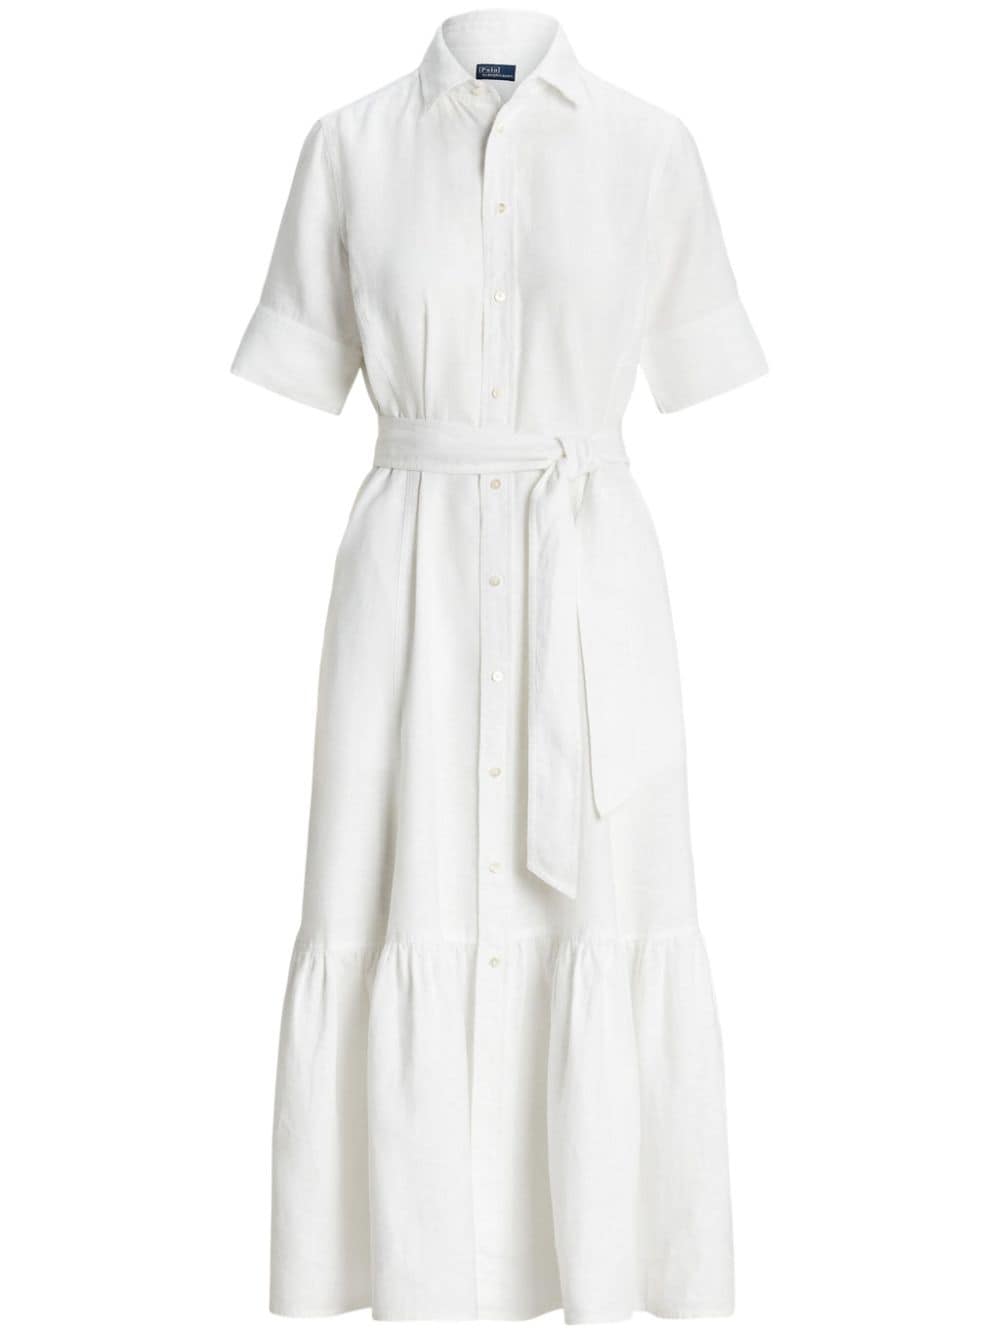 Image 1 of Polo Ralph Lauren short-sleeve linen shirt dress